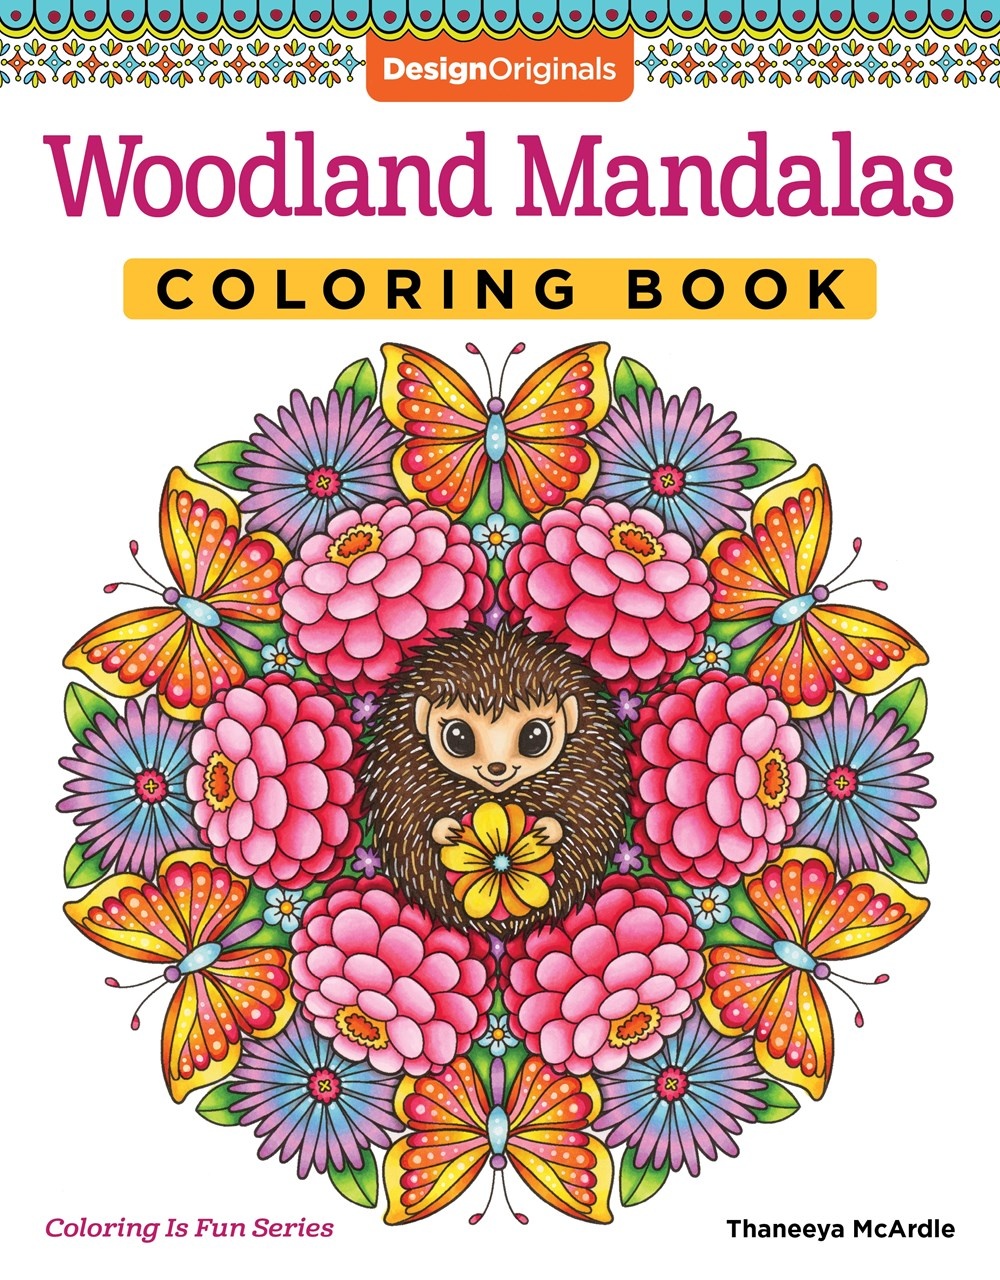  13 Mandala Styles: Adult Coloring Book, 150 Mandalas, 13  Unique Mandala Styles